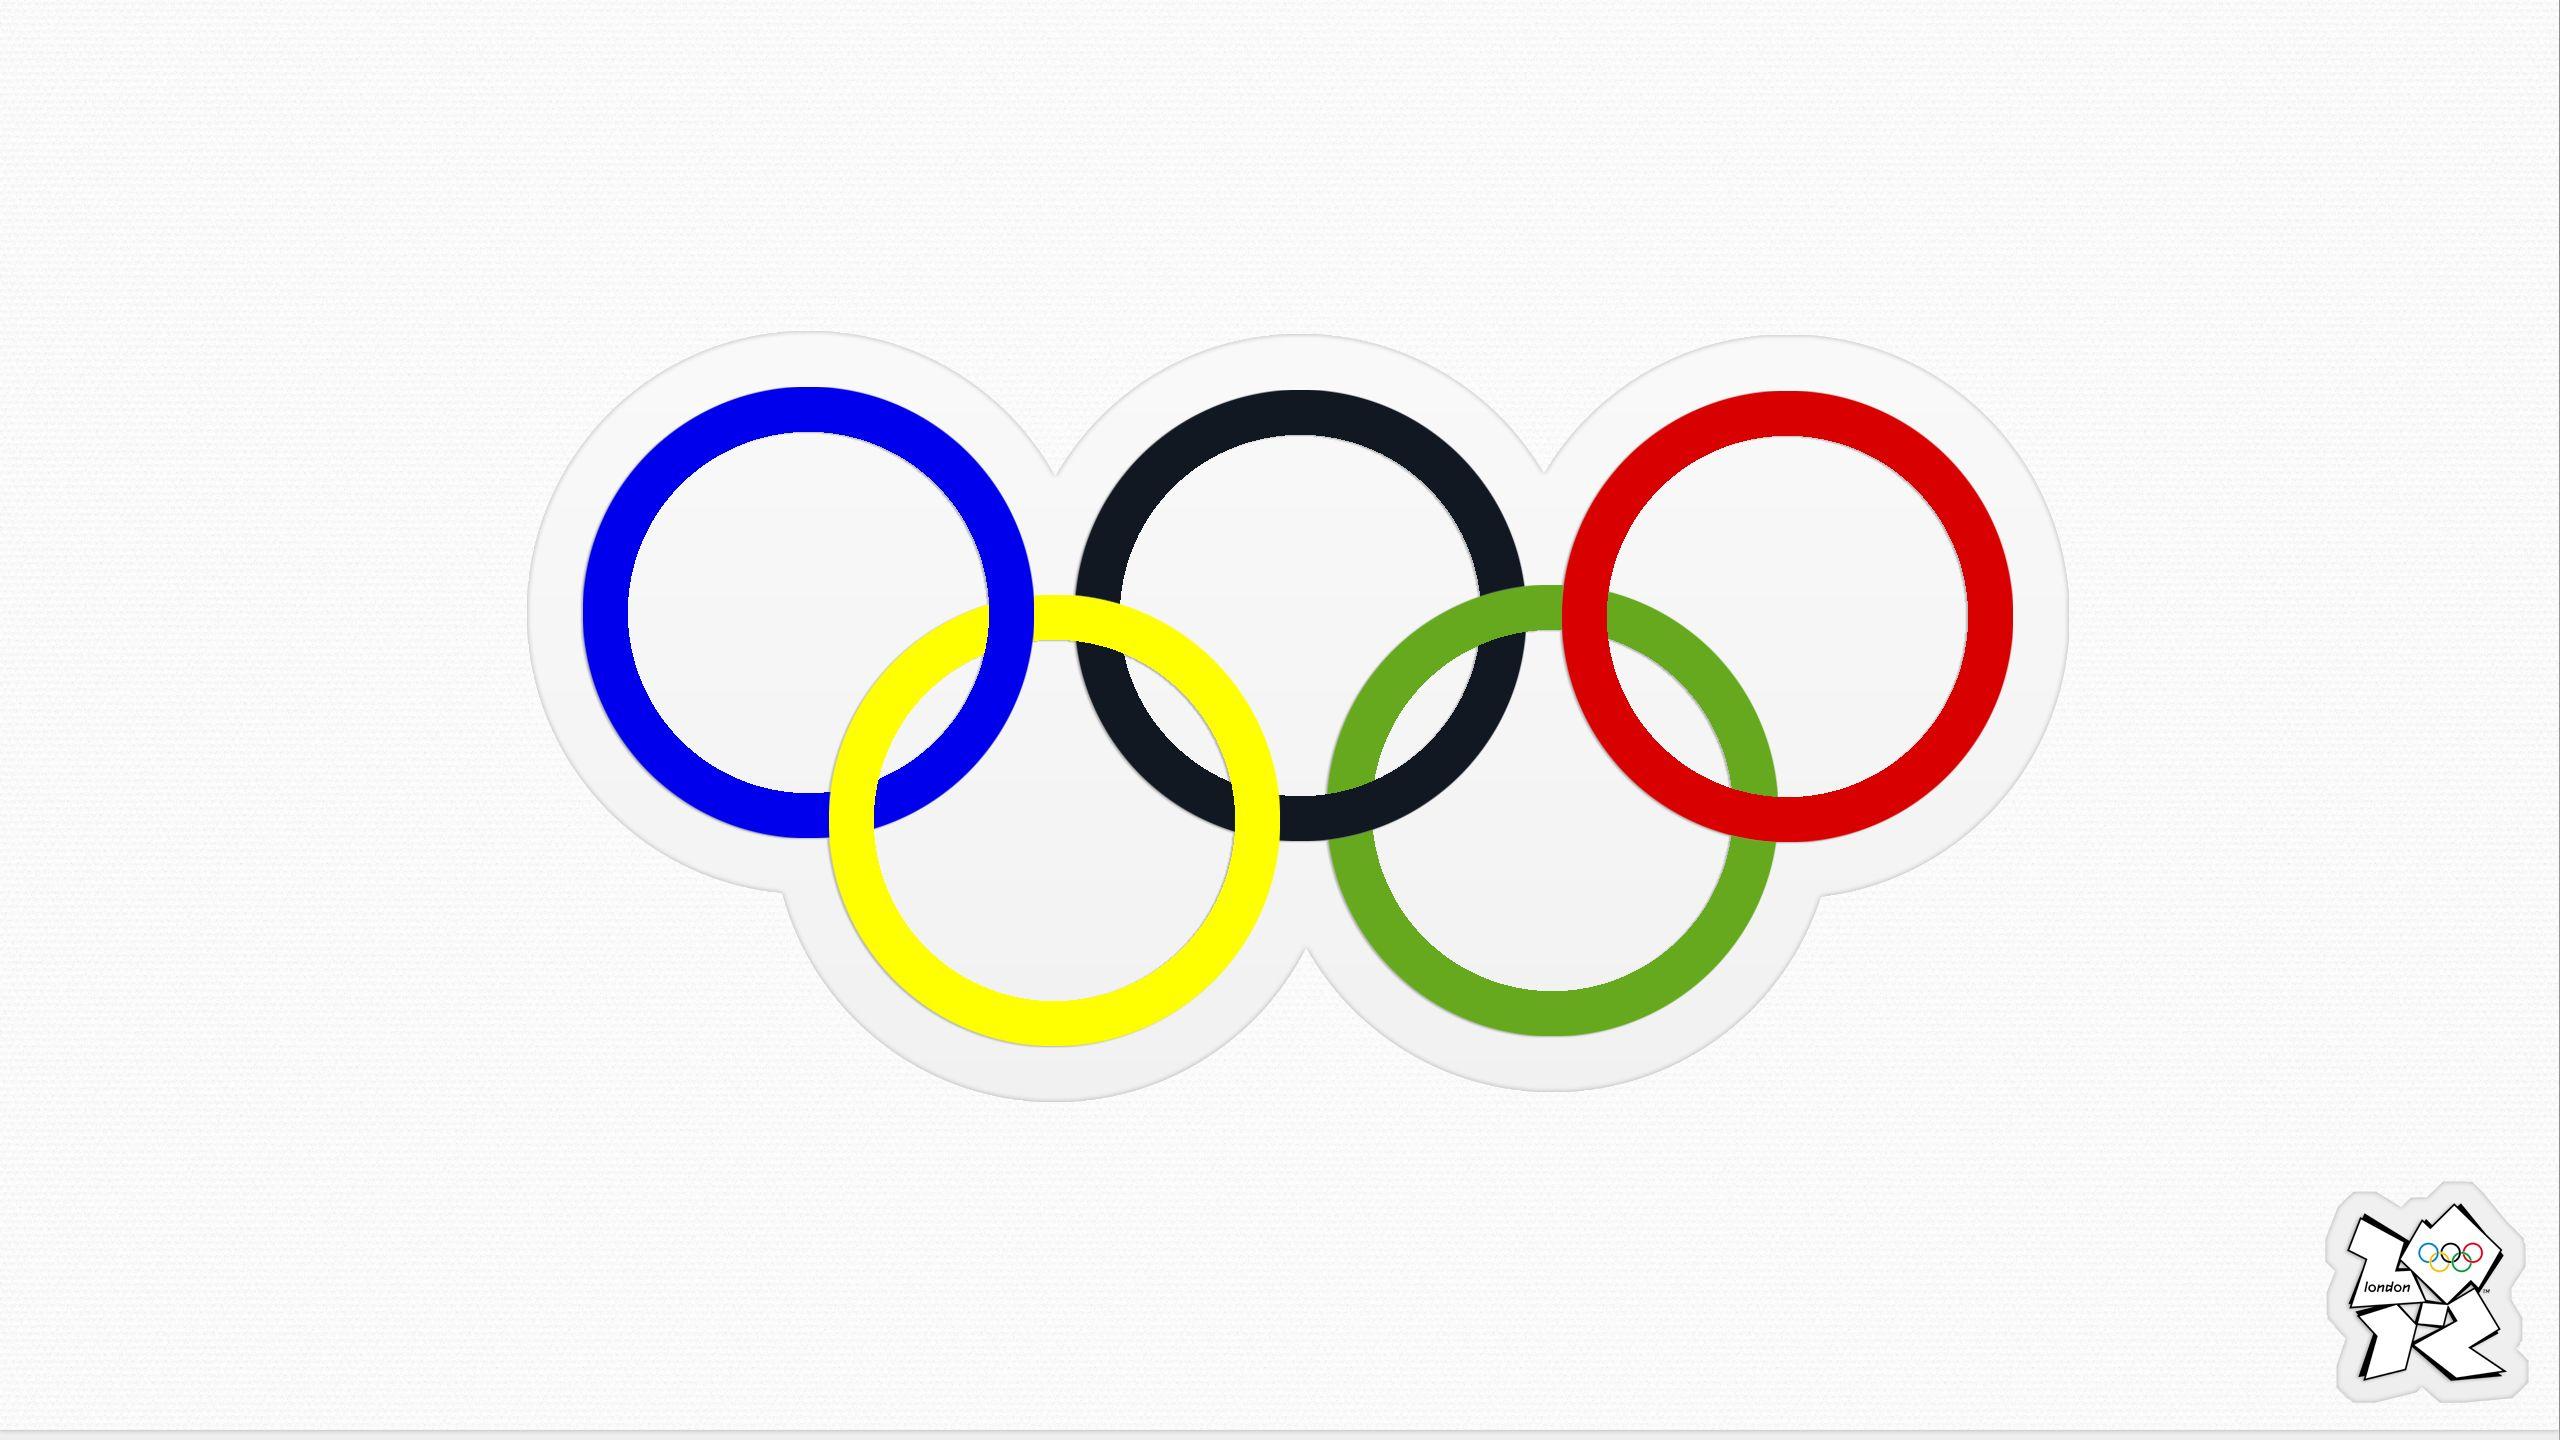 Logotipo De Los Juegos Olimpicos 2020 El Logotipo Y La Identidad De Images